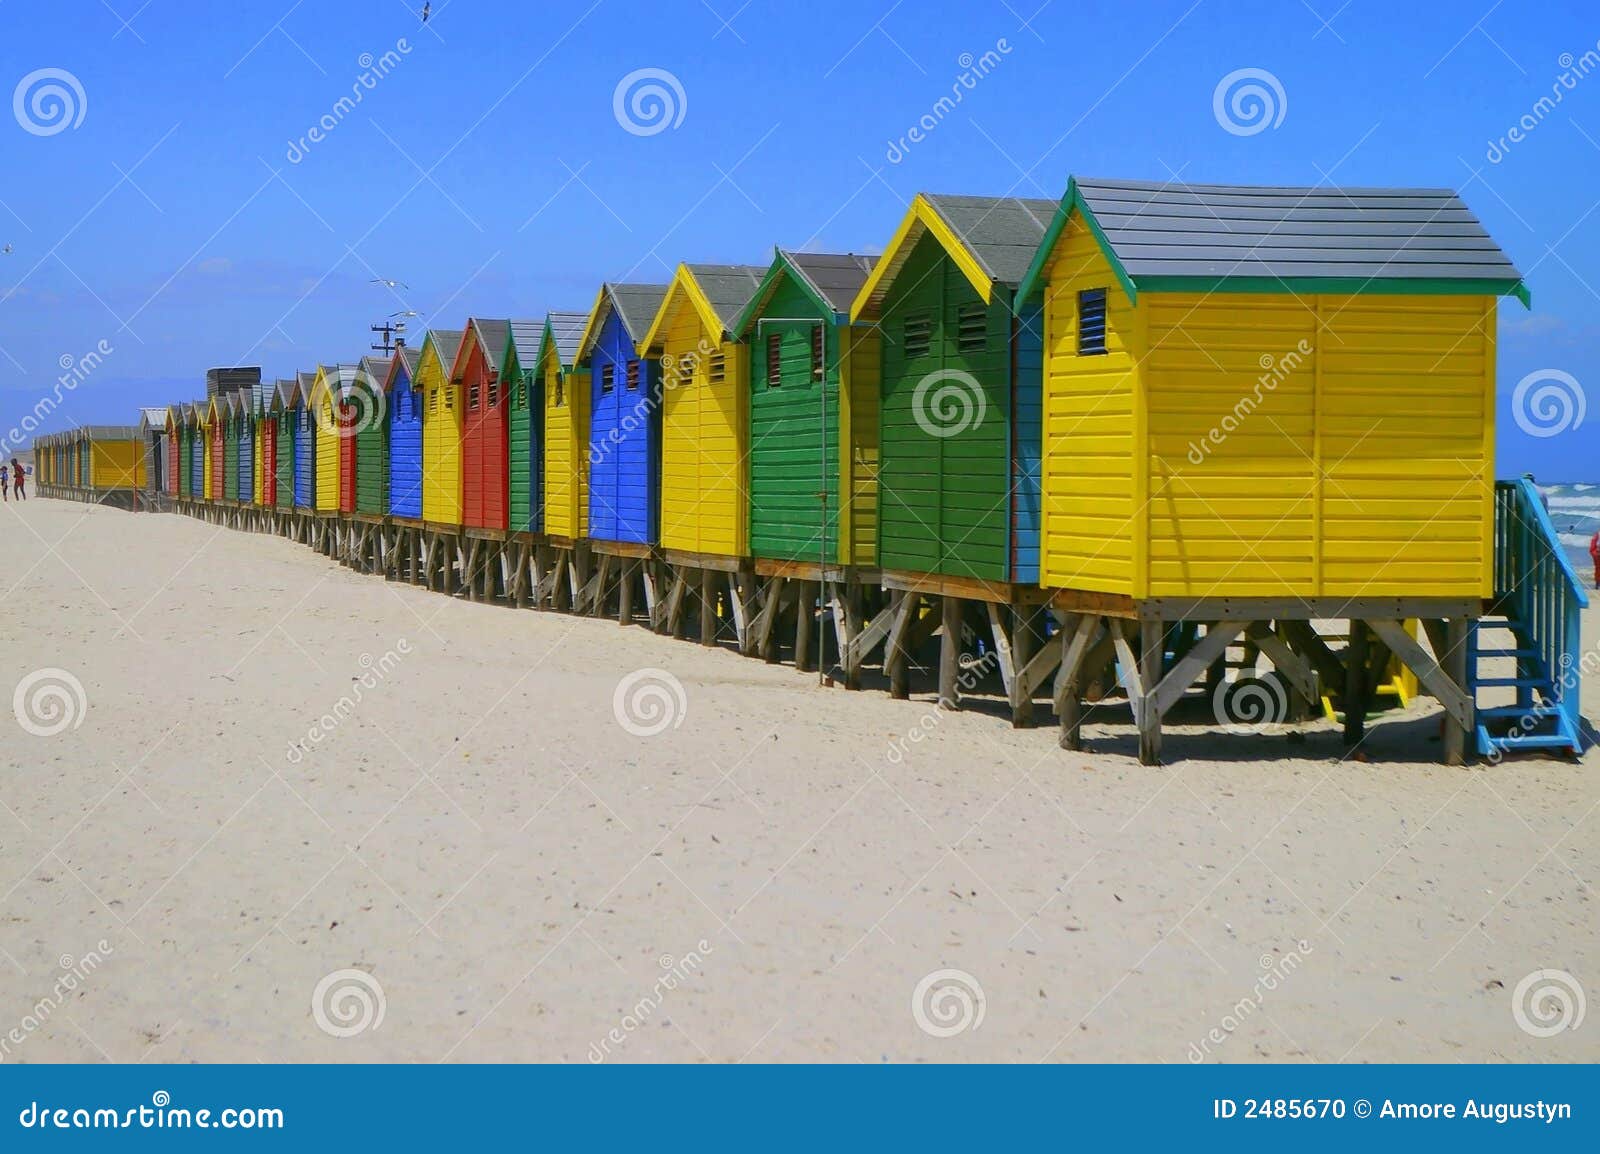 beachfront huts